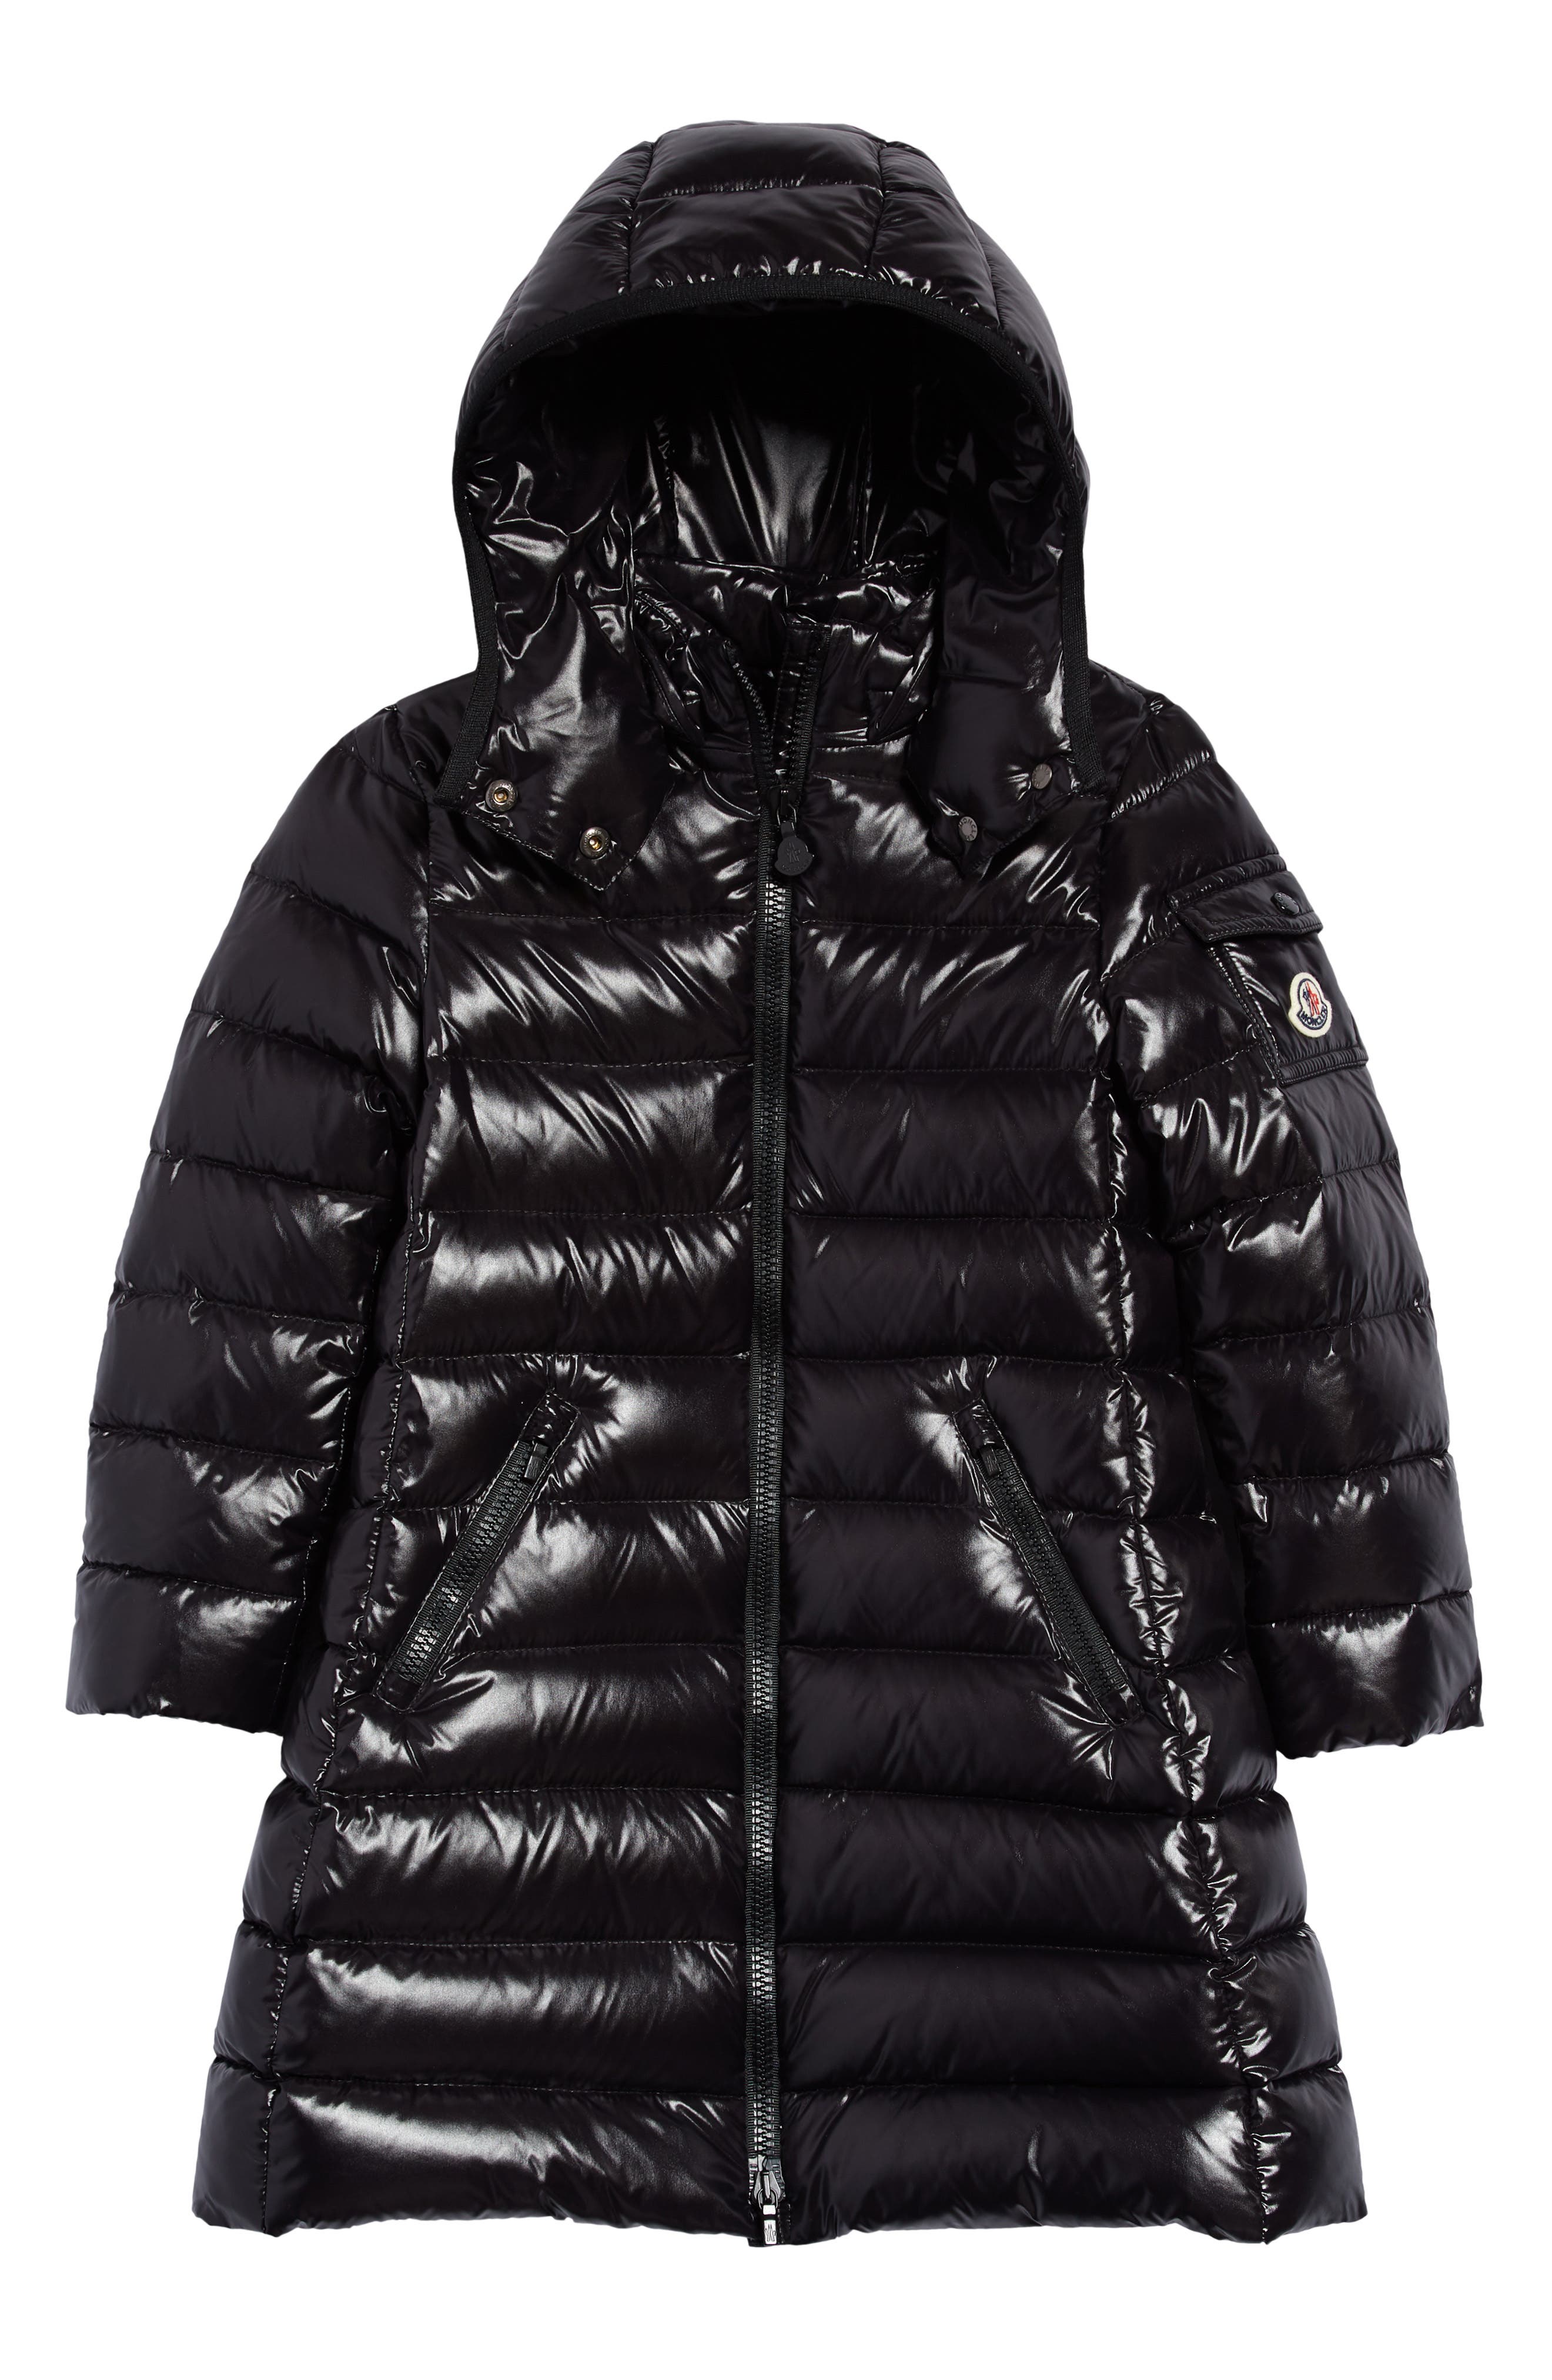 M&A Girls Lightweight Down Puffer Jacket Hooded Long Winter Coat 